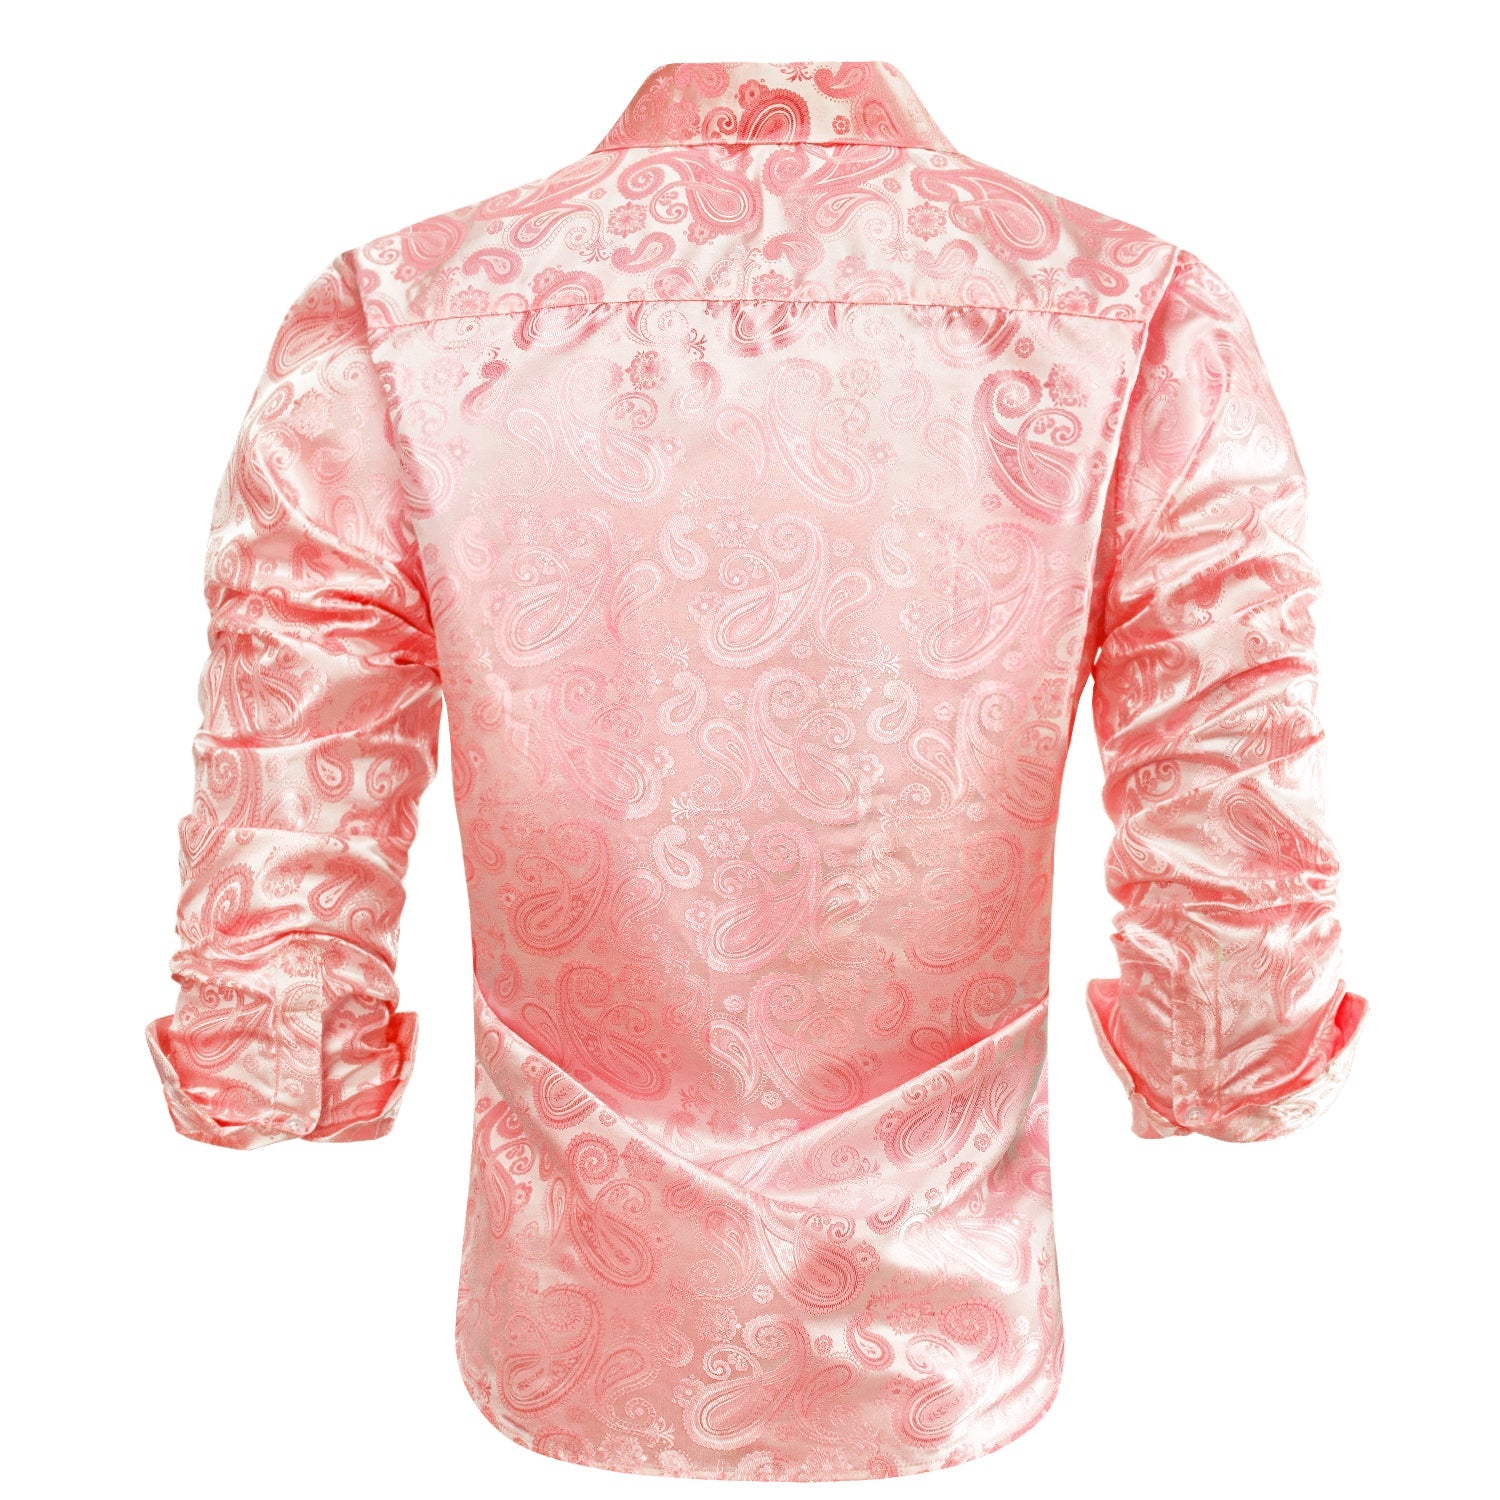 Coral Pink Paisley Silk Men's Long Sleeve Shirt Casual